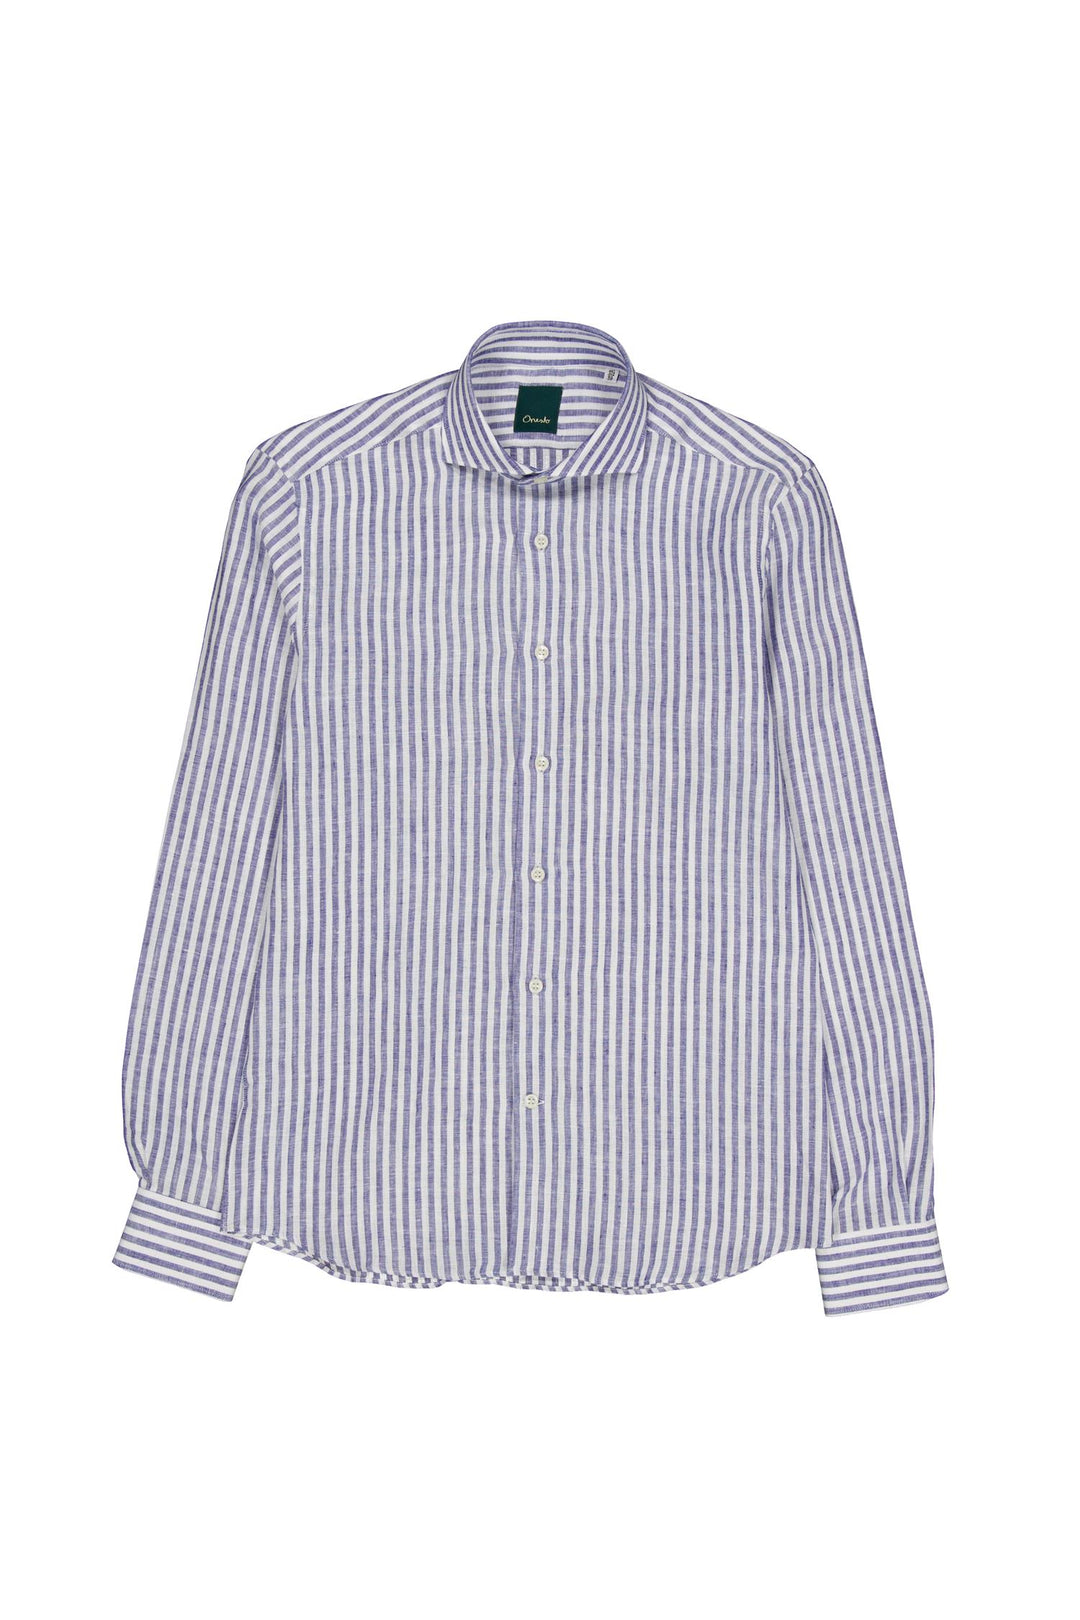 Amalfi Formal Linen Shirt Blue Stripe-Skjorter-Bogartstore